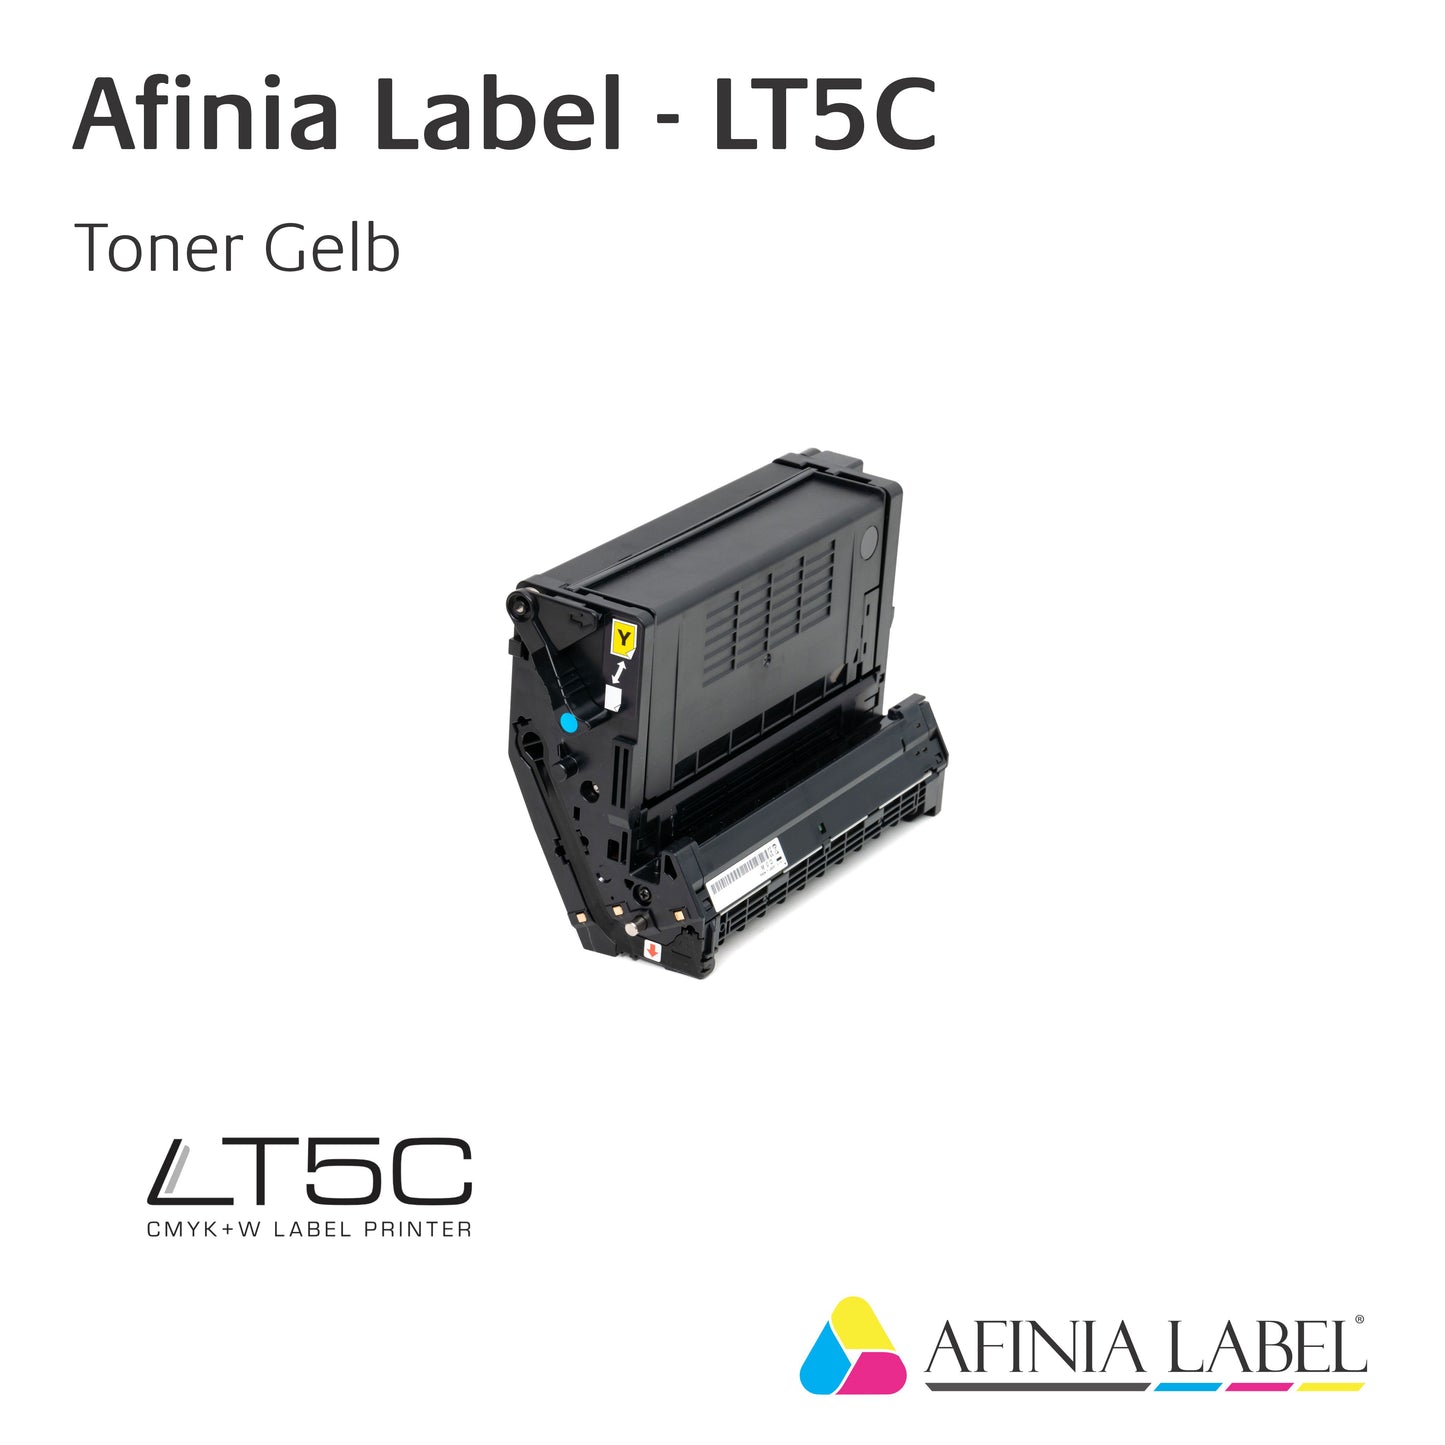 Afinia Label LT5C - Toner / Trommel - Gelb